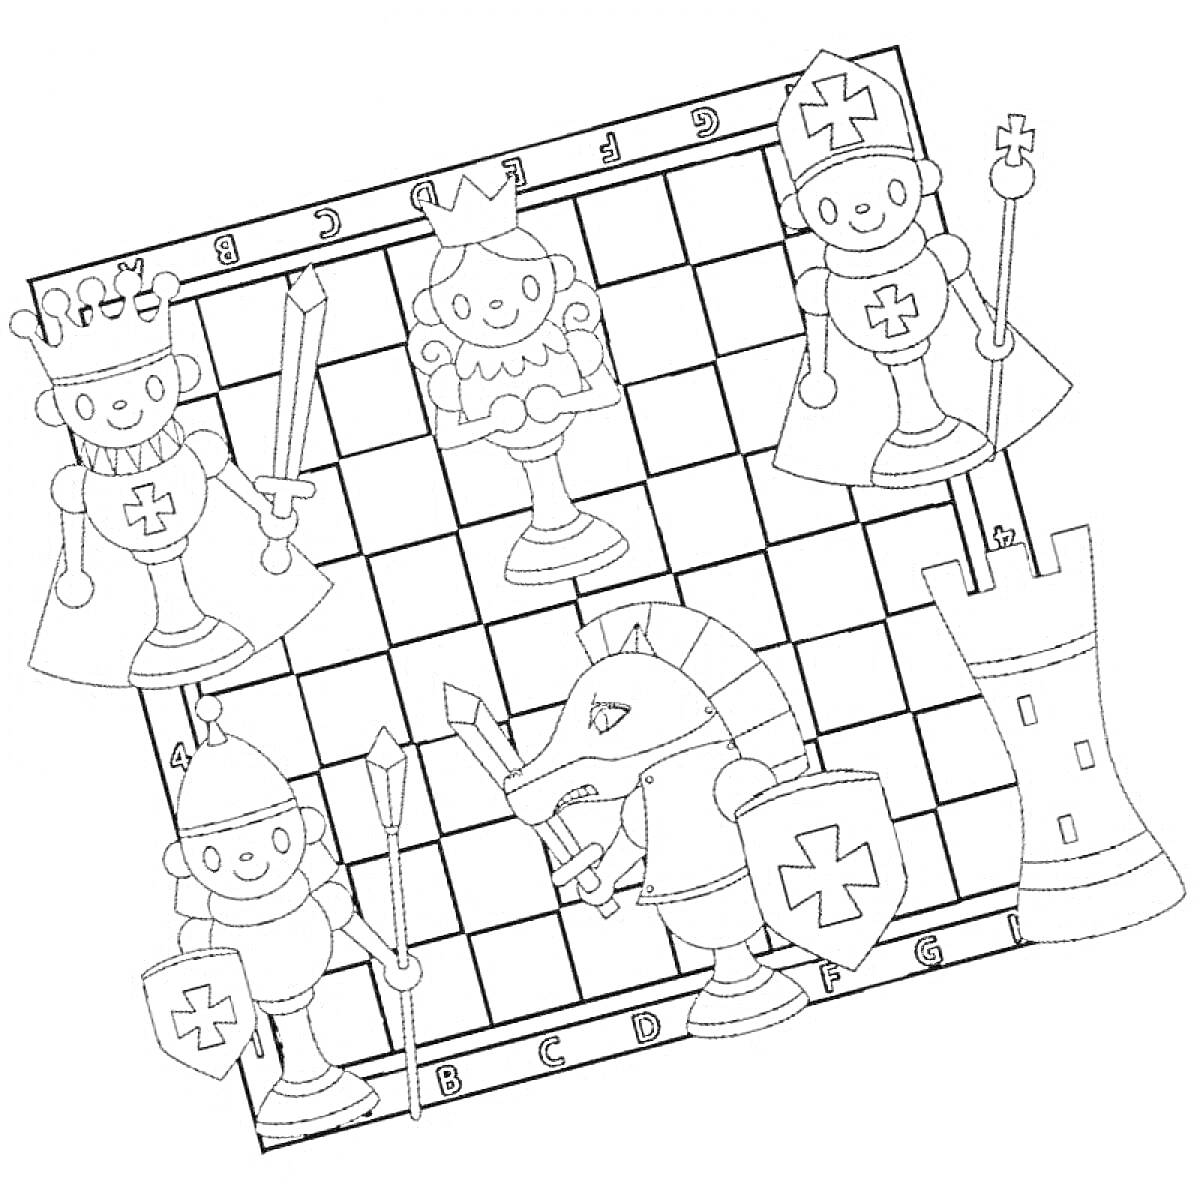 Раскраска Раскраска с шахматной доской и шахматными фигурами (король, ферзь, ладья, конь, слон, пешка) в образах рыцарей